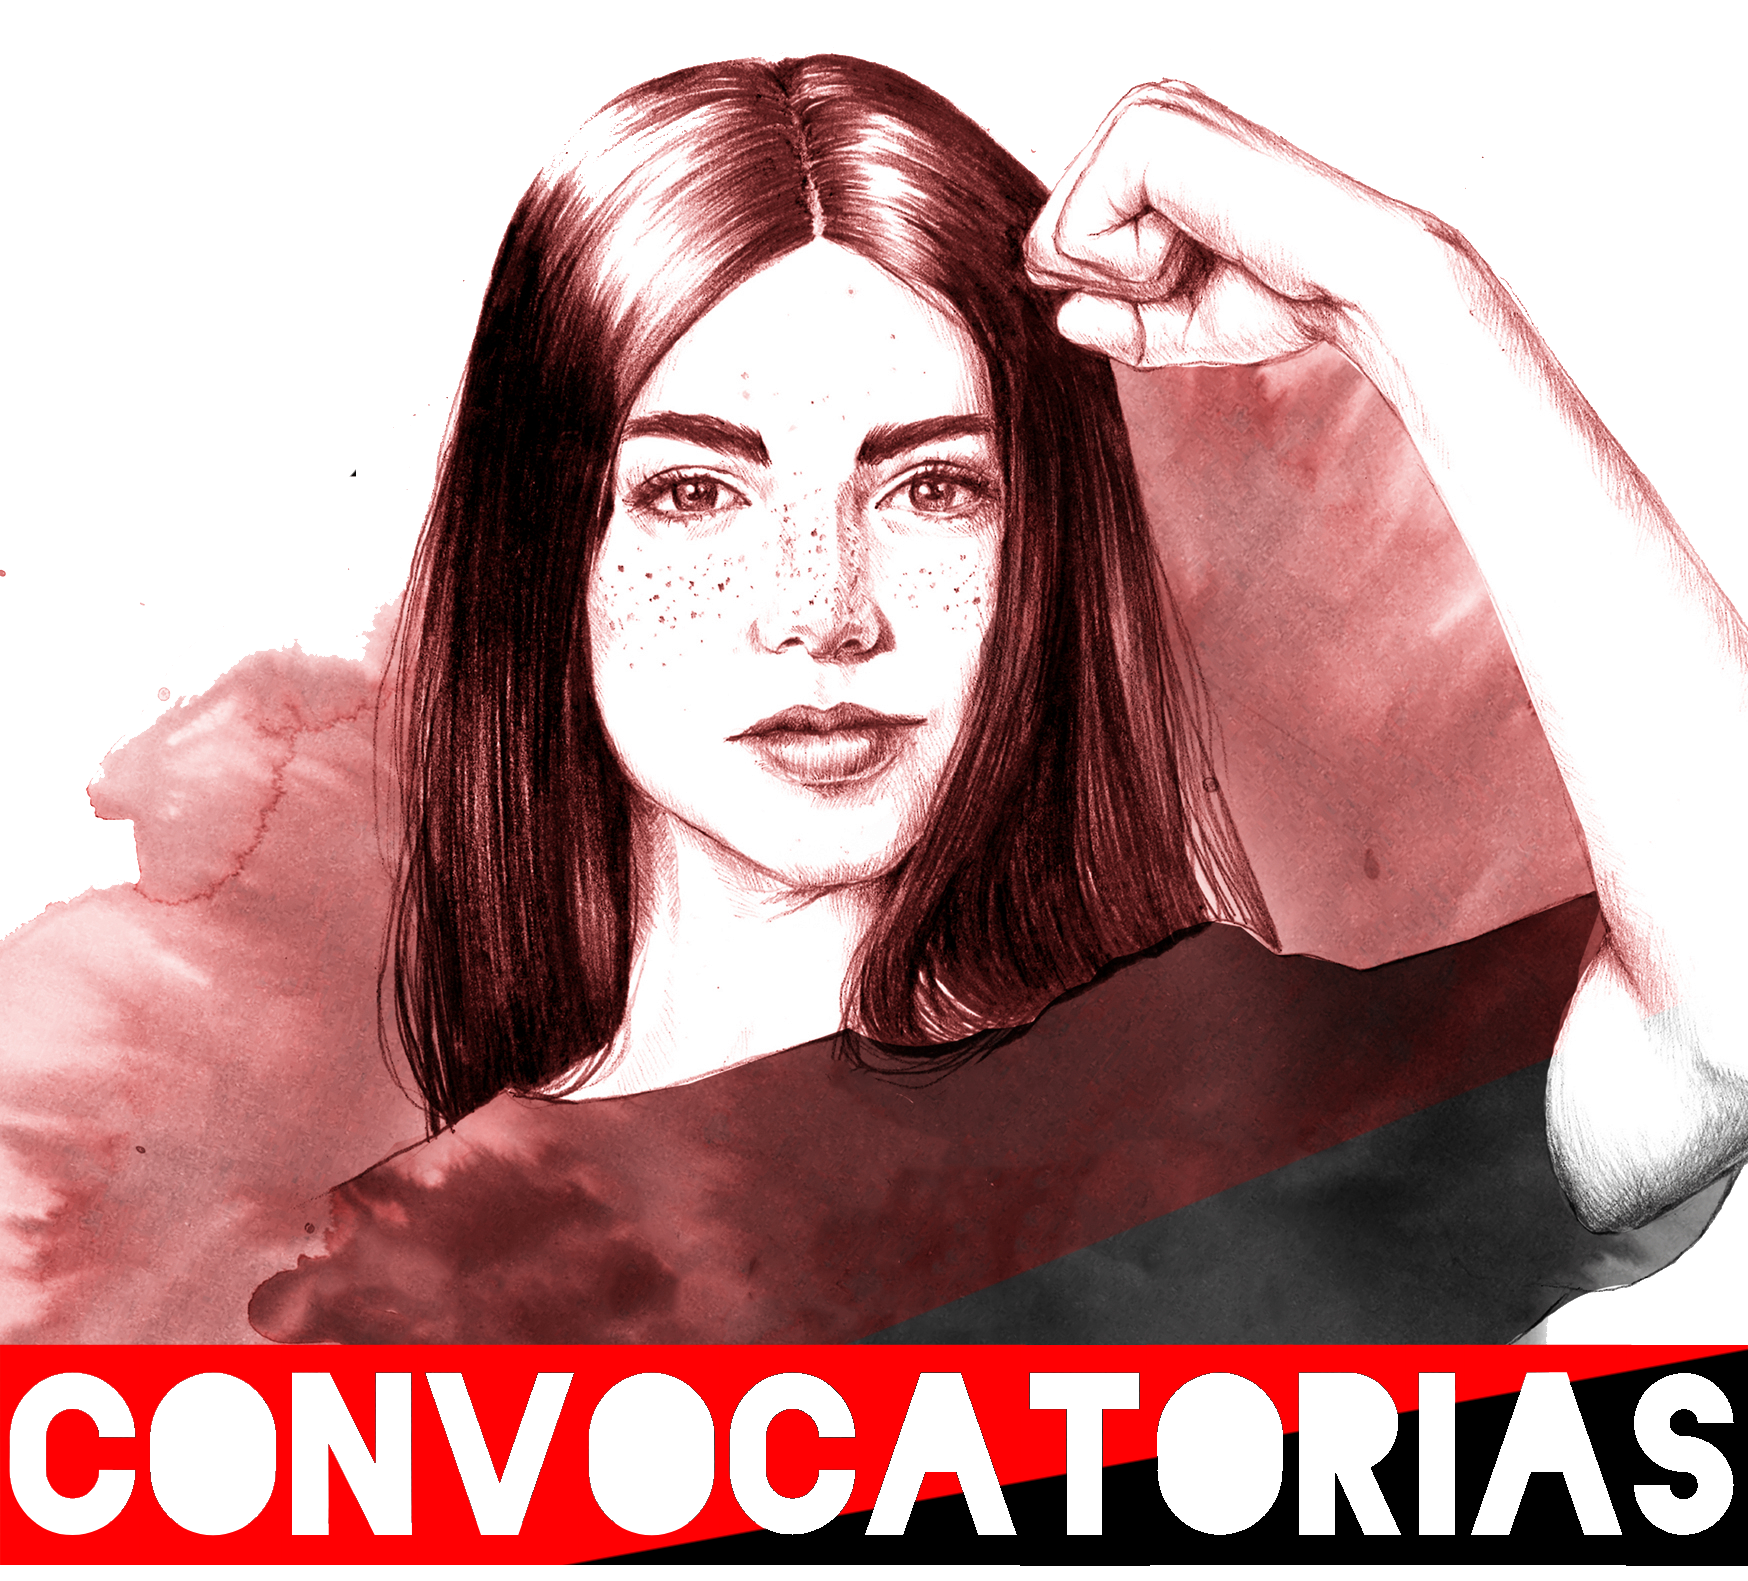 CONVOCATORIAS/AGENDA